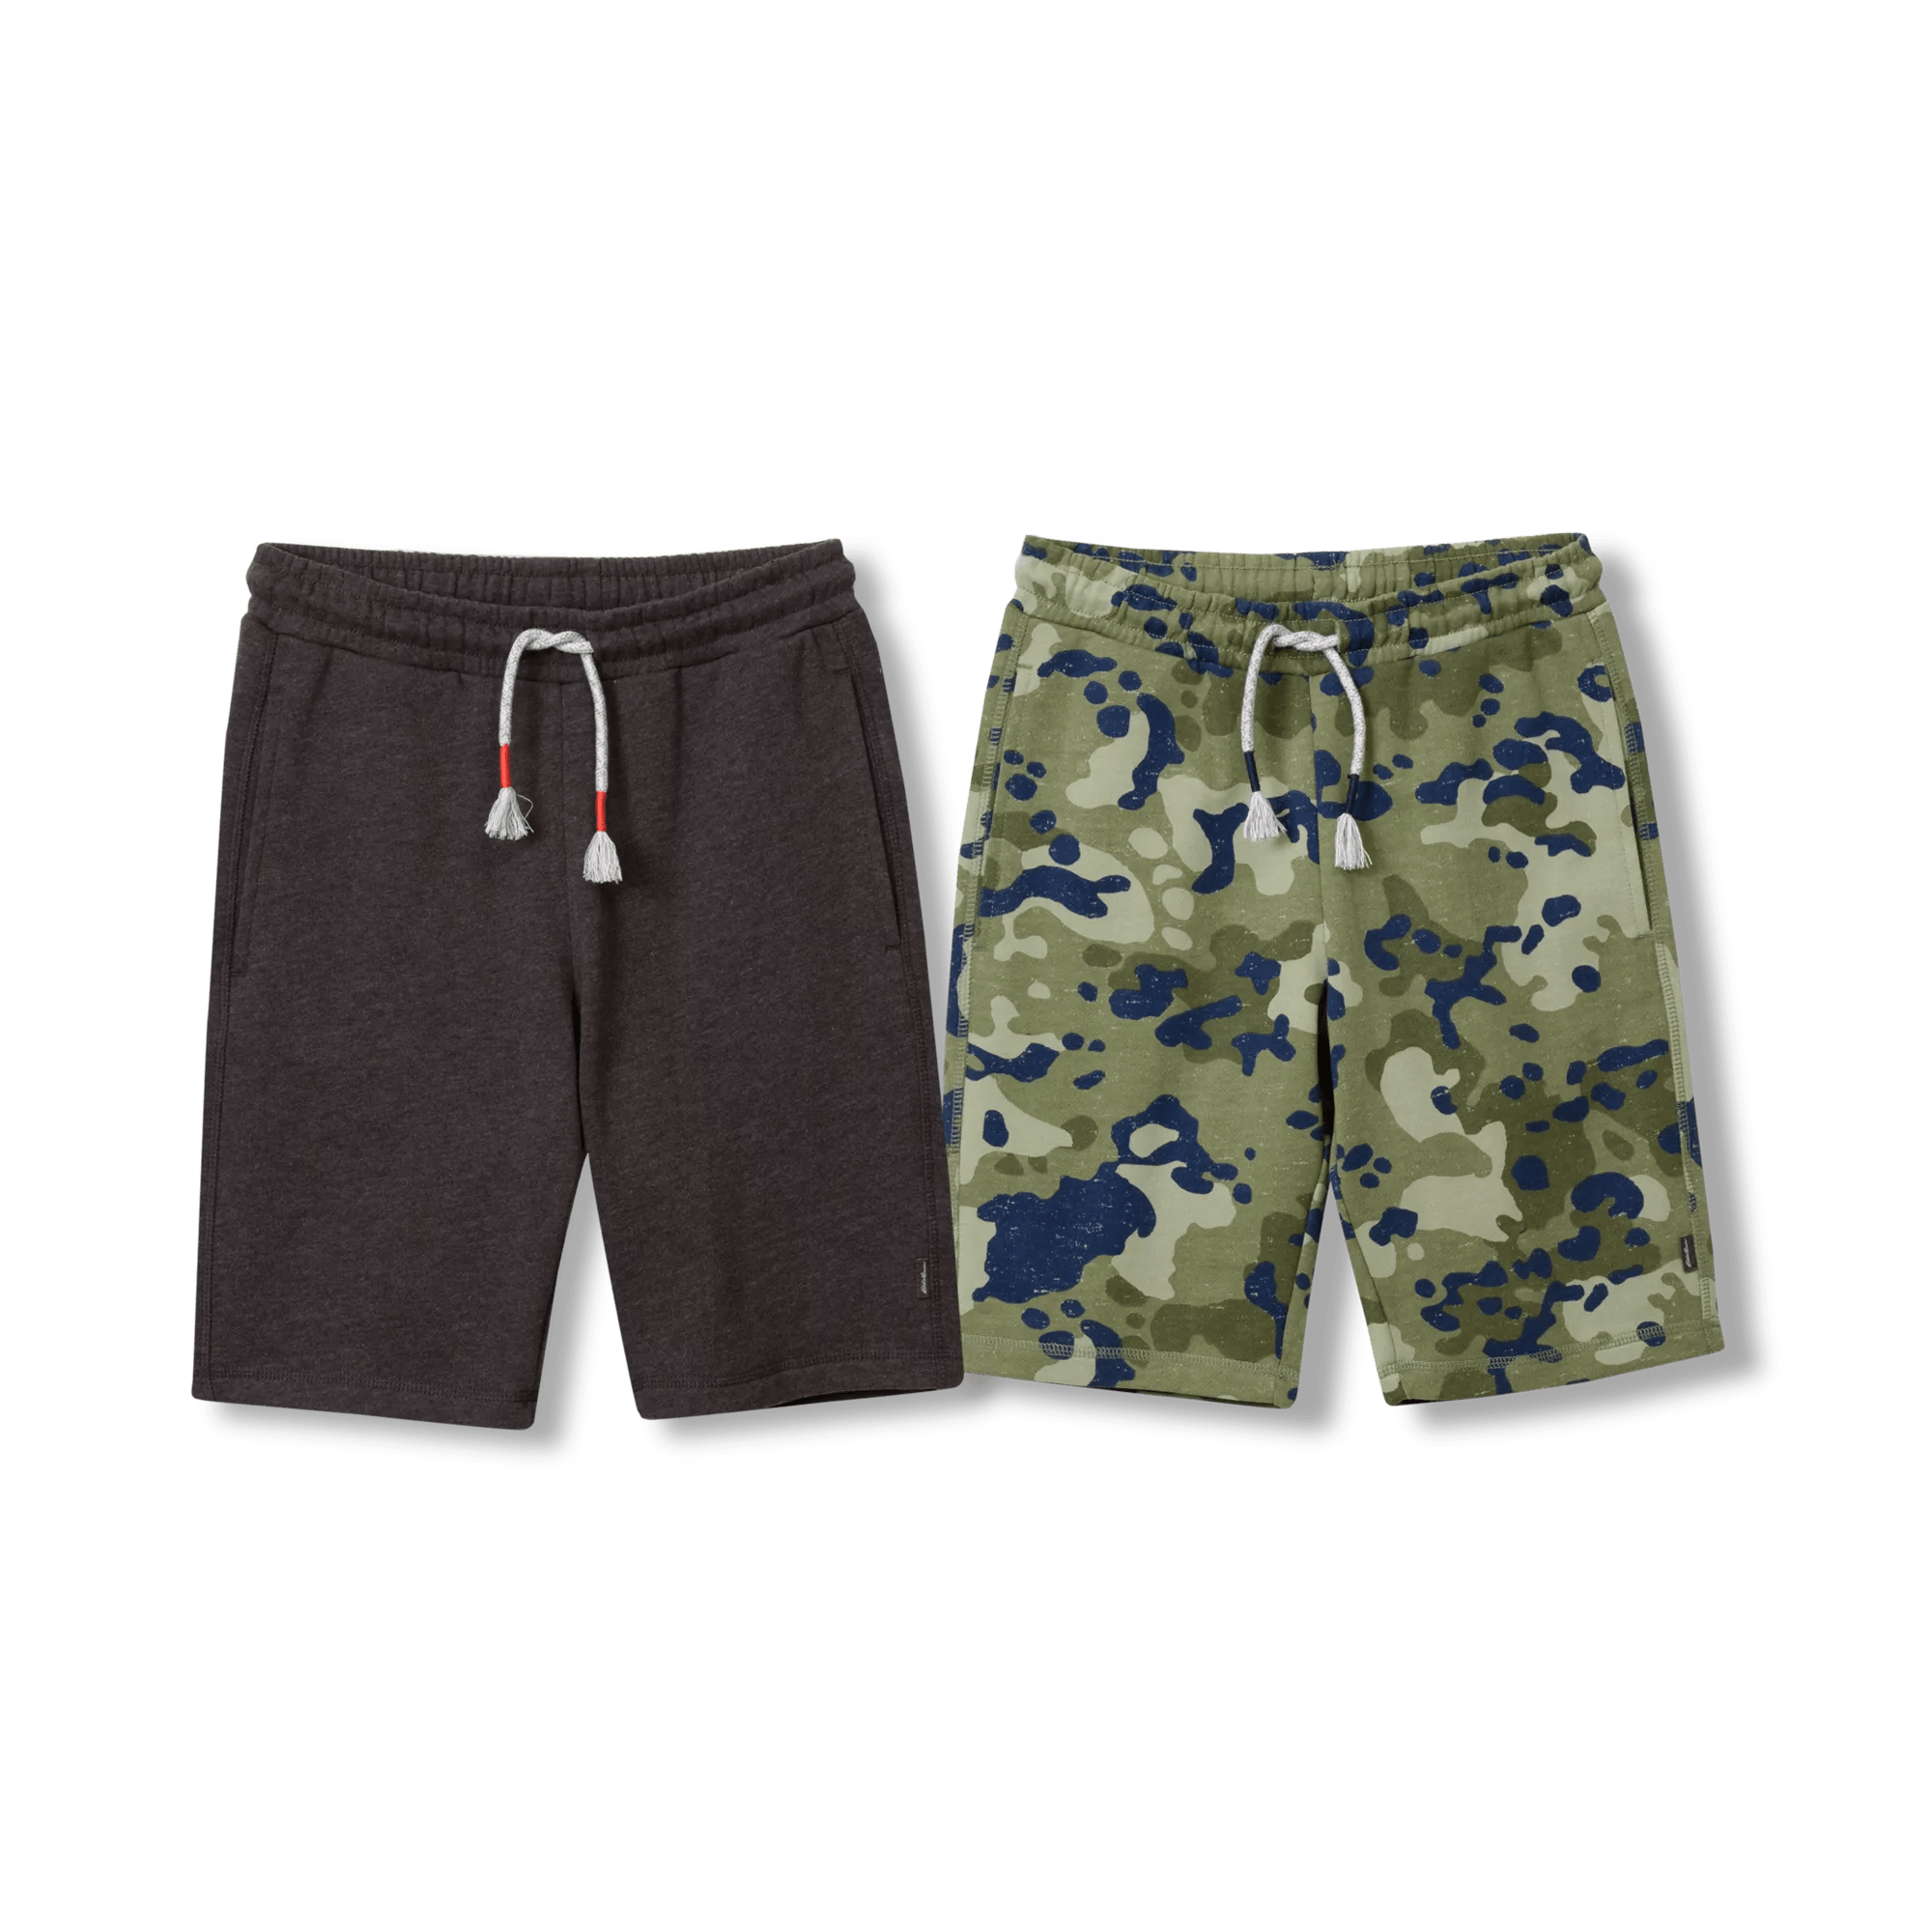 Camp Fleece Shorts - 2 Pack